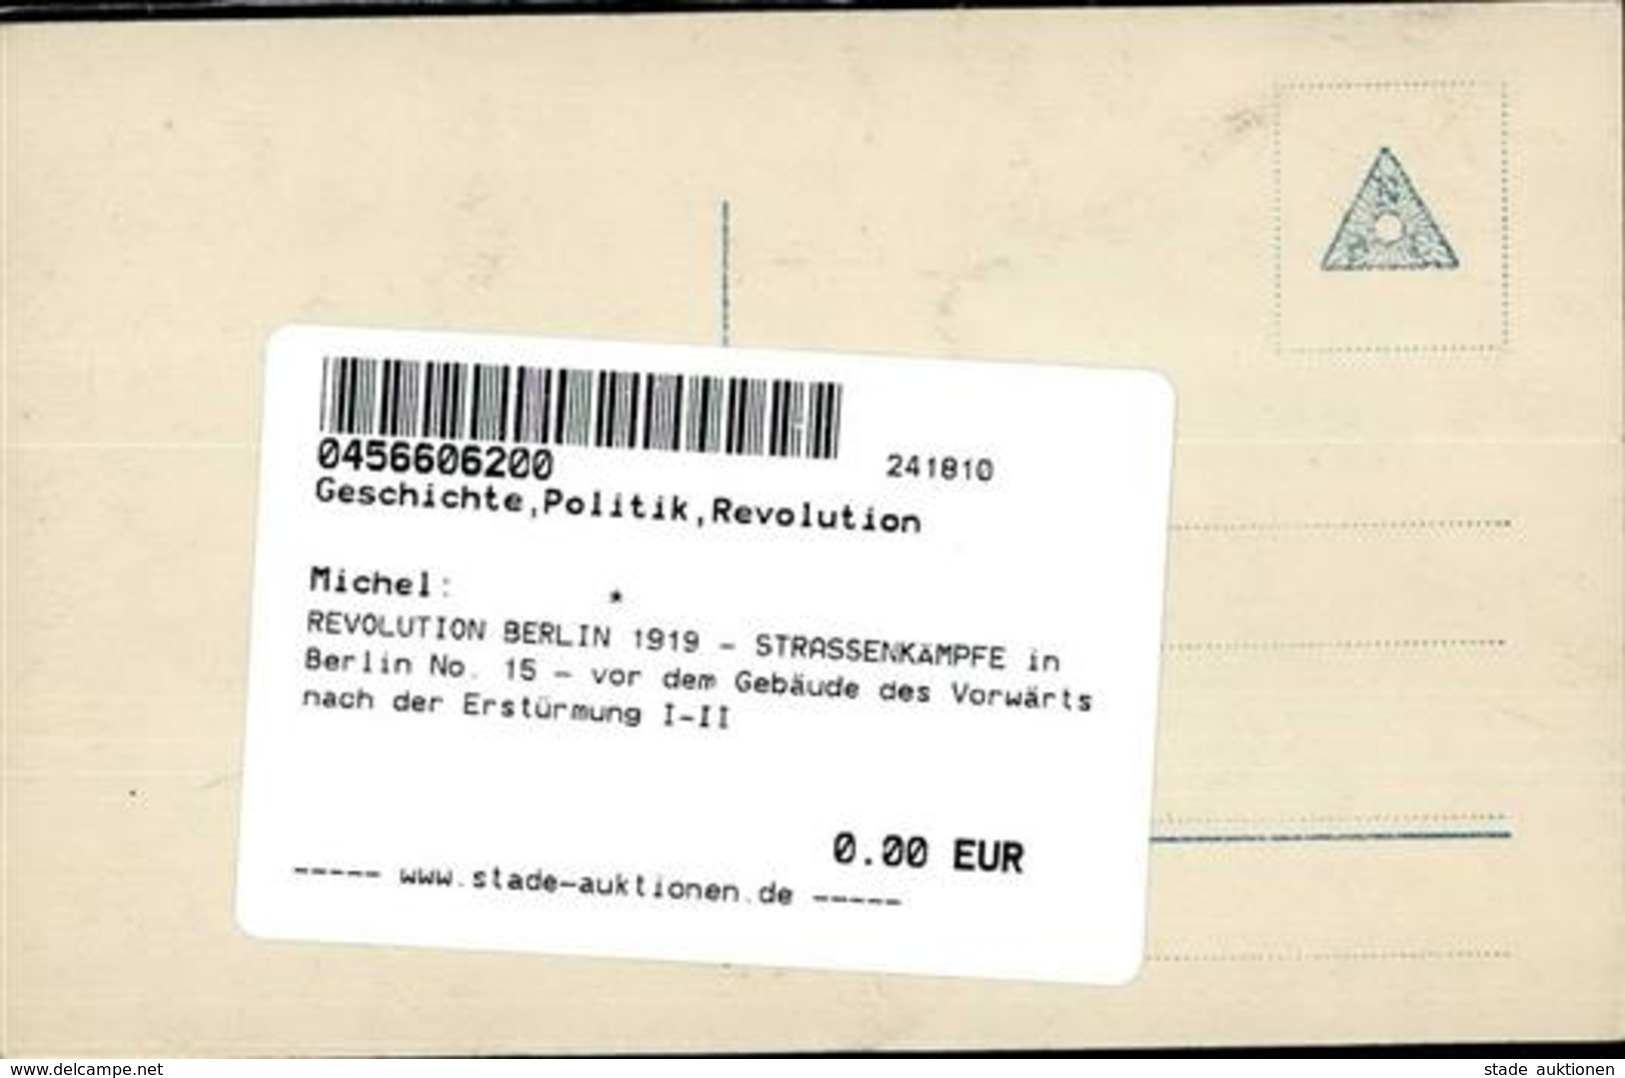 REVOLUTION BERLIN 1919 - STRASSENKÄMPFE In Berlin No. 15 - Vor Dem Gebäude Des Vorwärts Nach Der Erstürmung I-II - Guerra